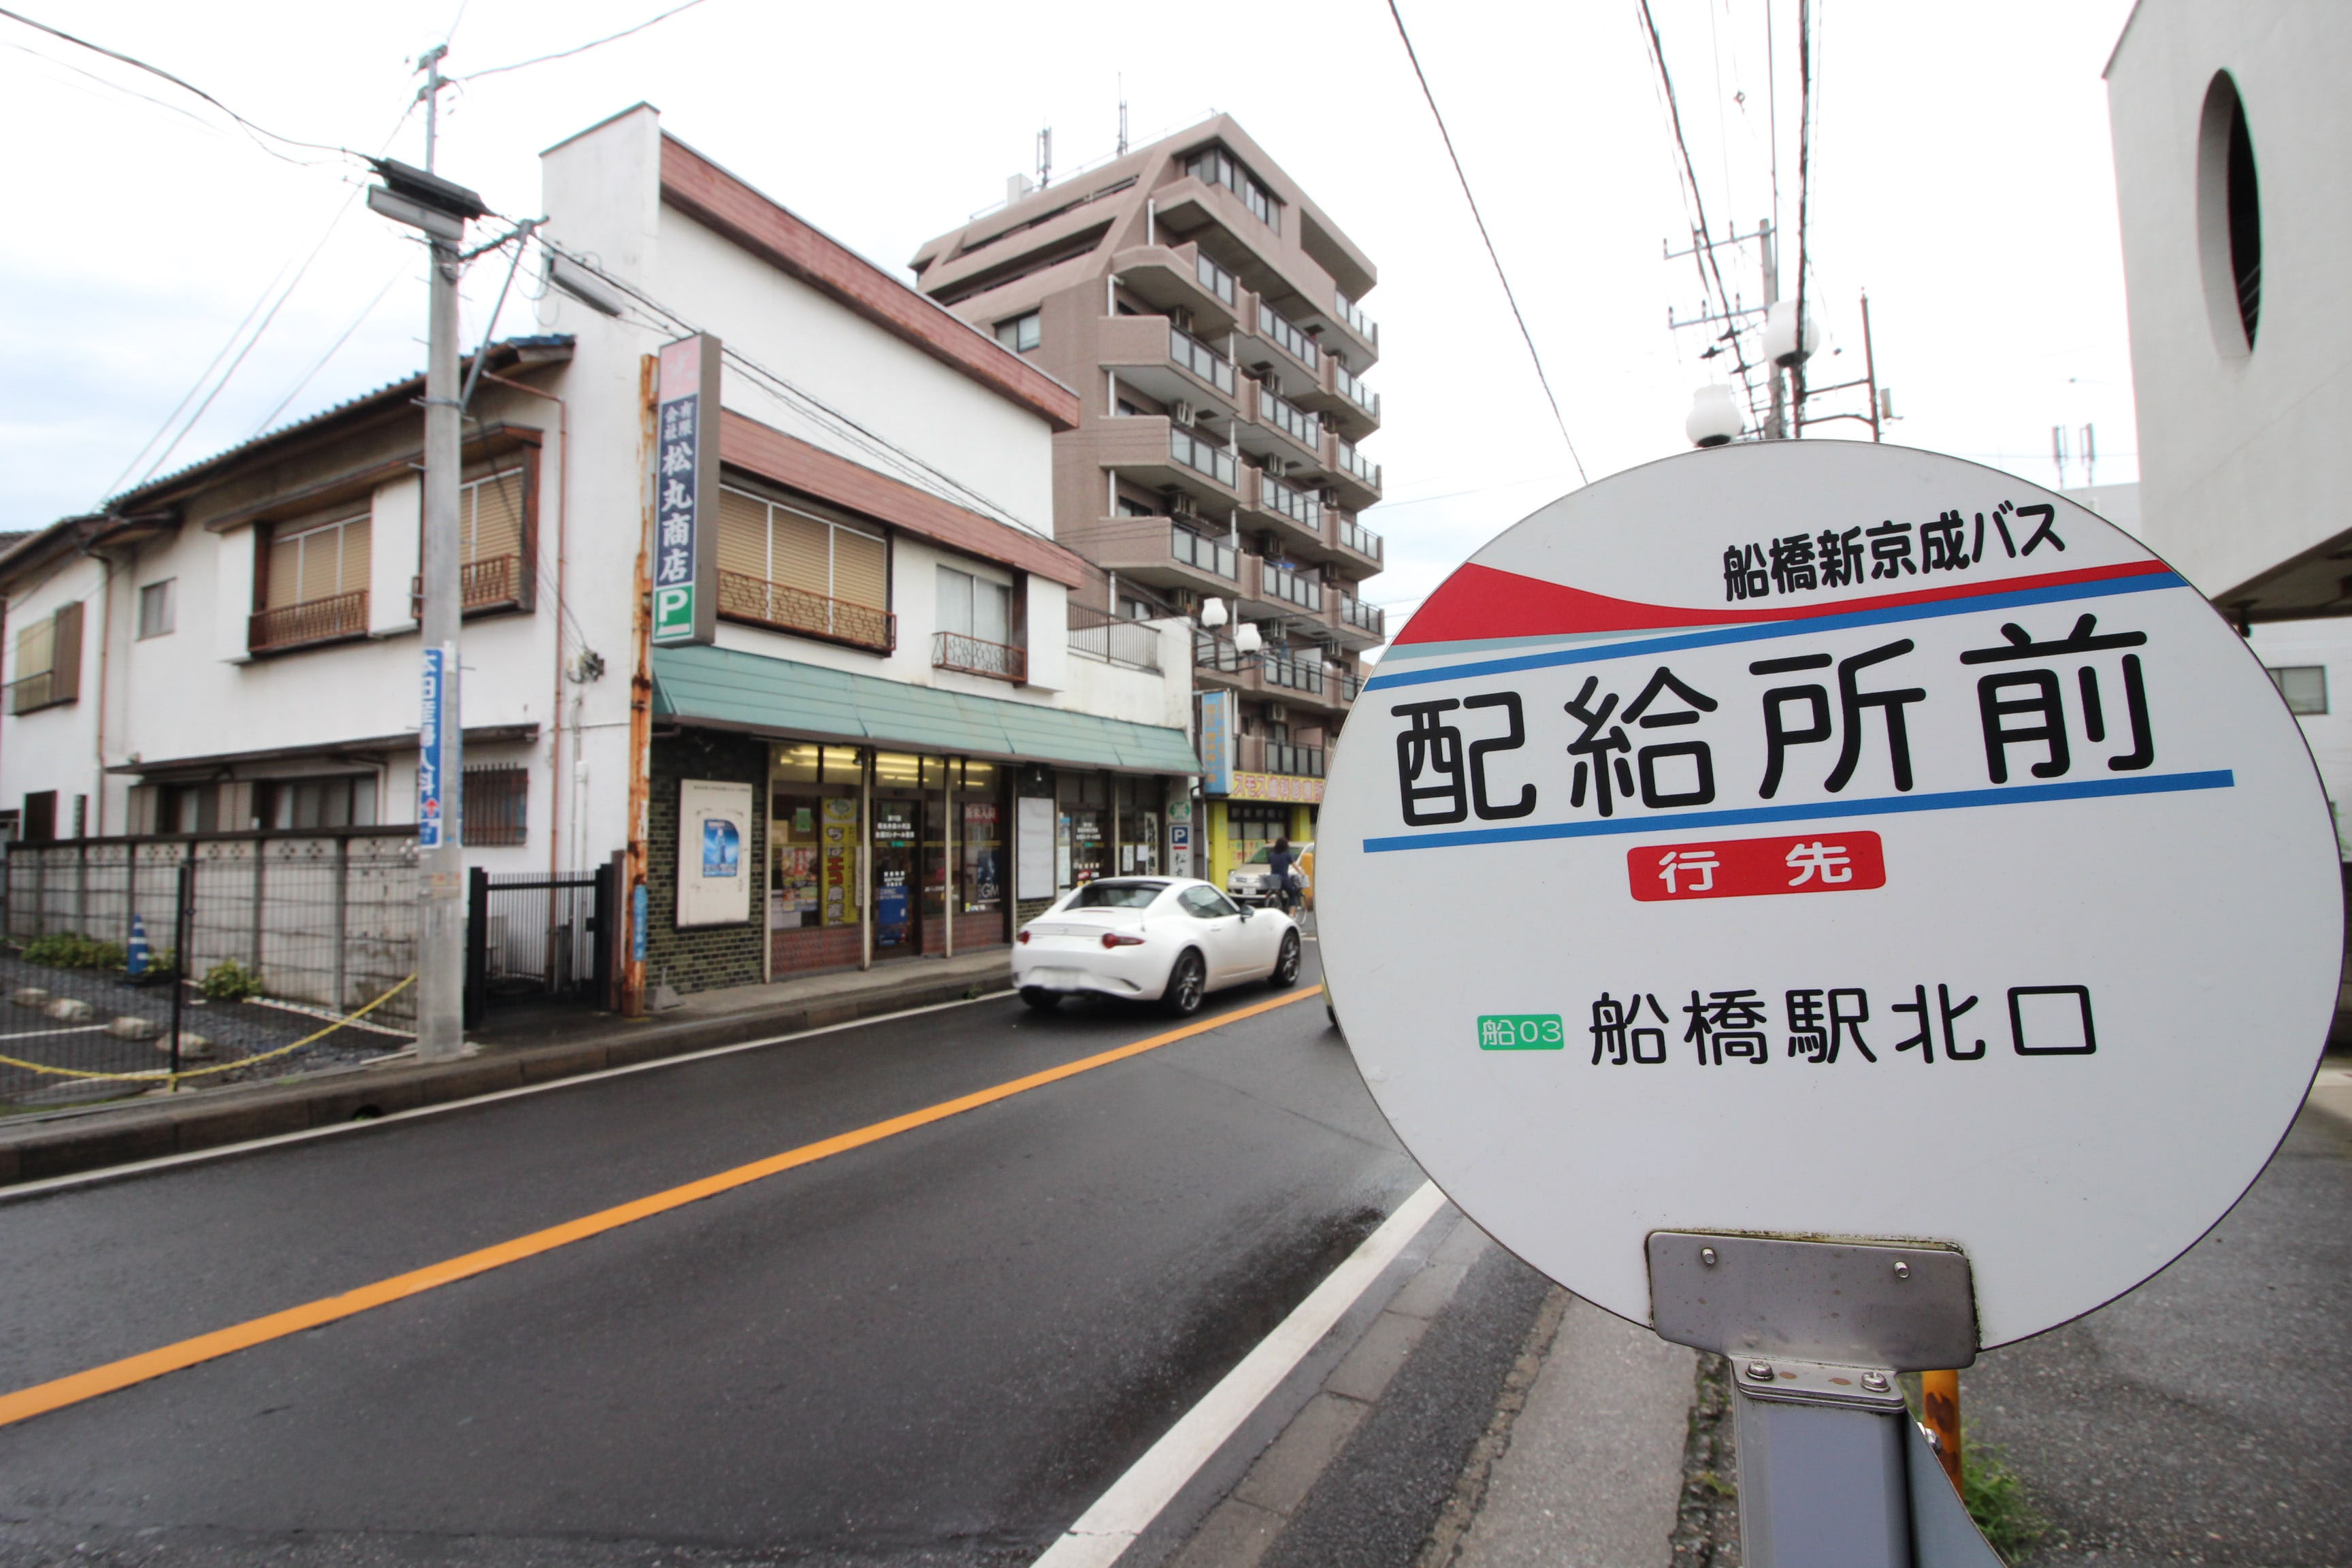 新京成バスの 配給所前 バス停について調べてみた 鎌ケ谷船橋あたり